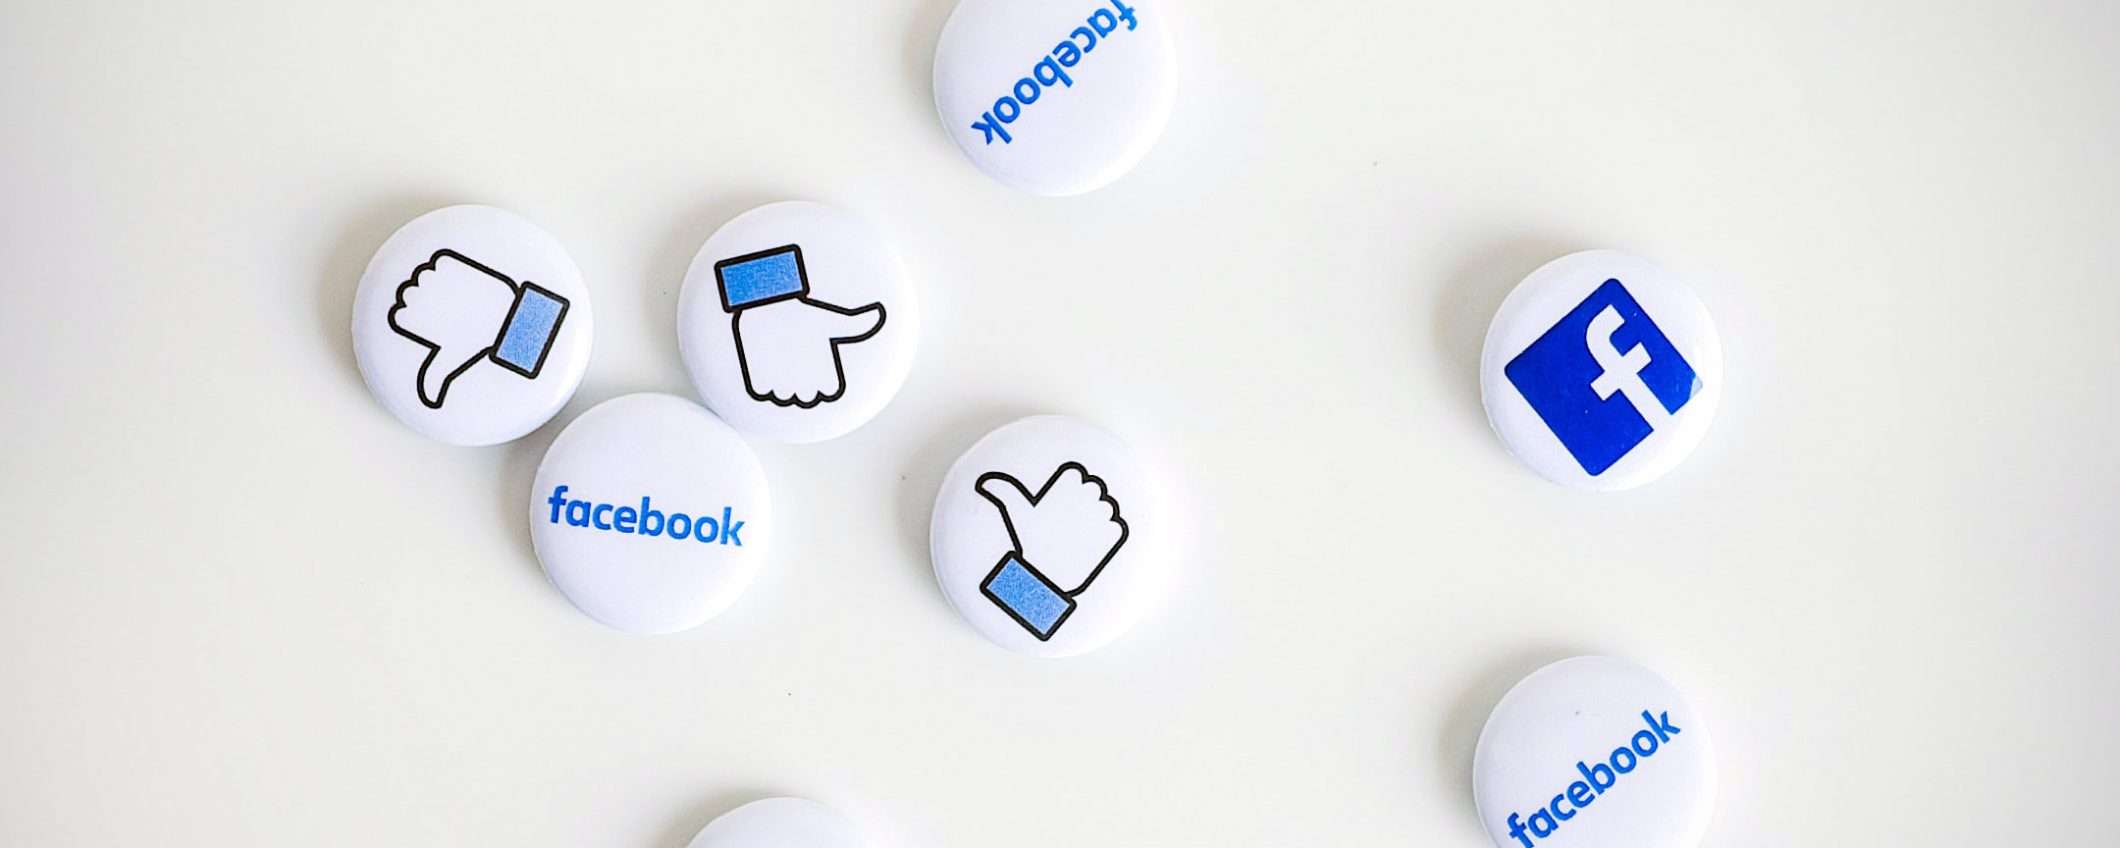 Il business di Facebook e la sostenibilità